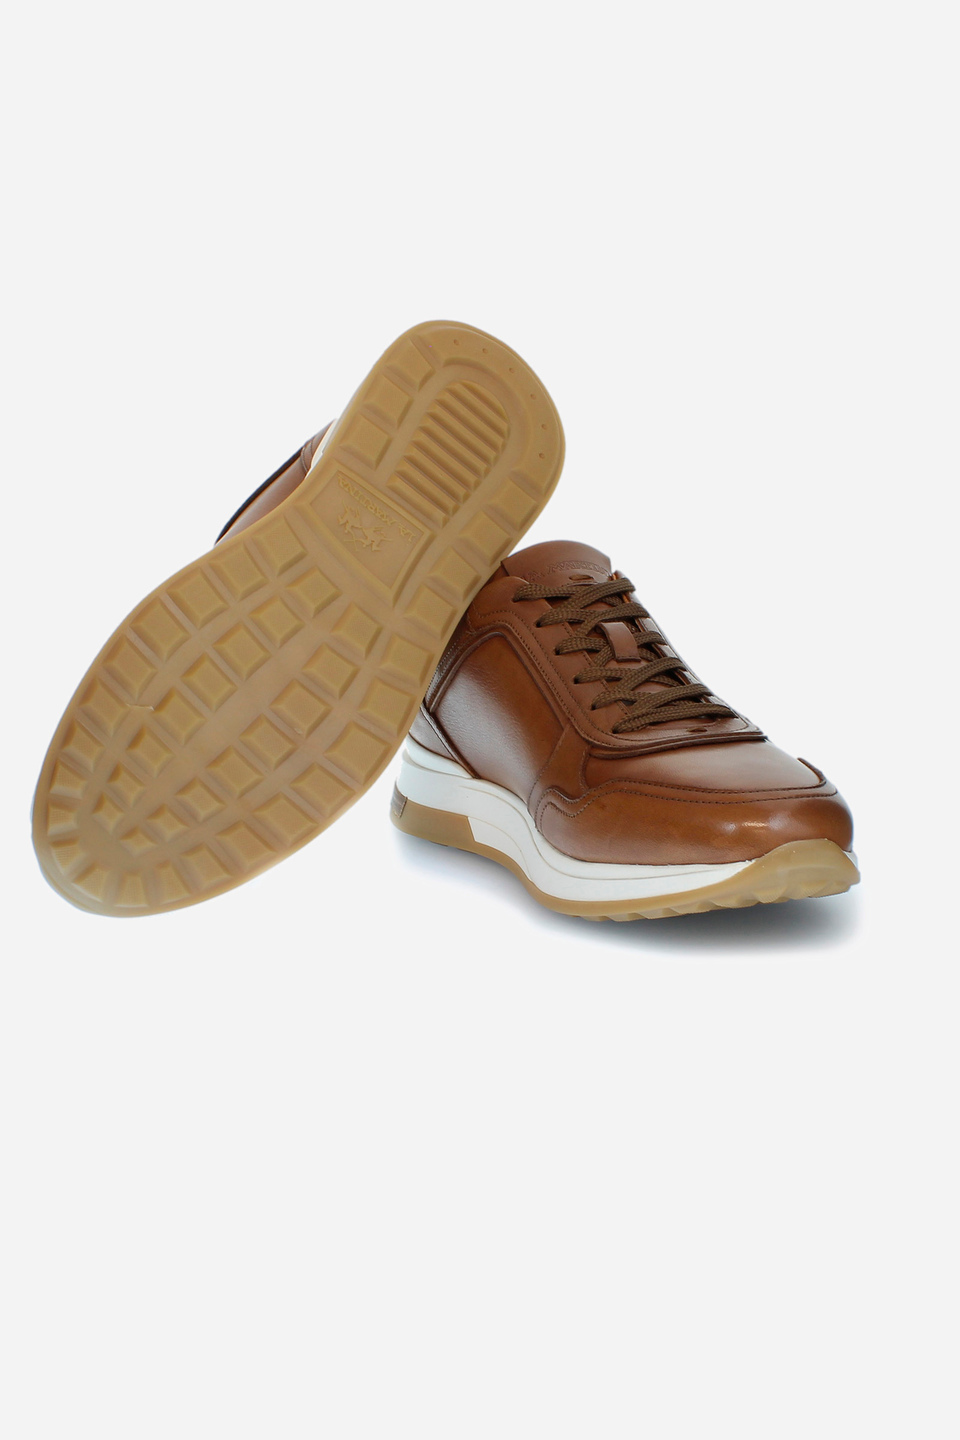 Herren-Sneaker mit erhöhter Sohle | La Martina - Official Online Shop